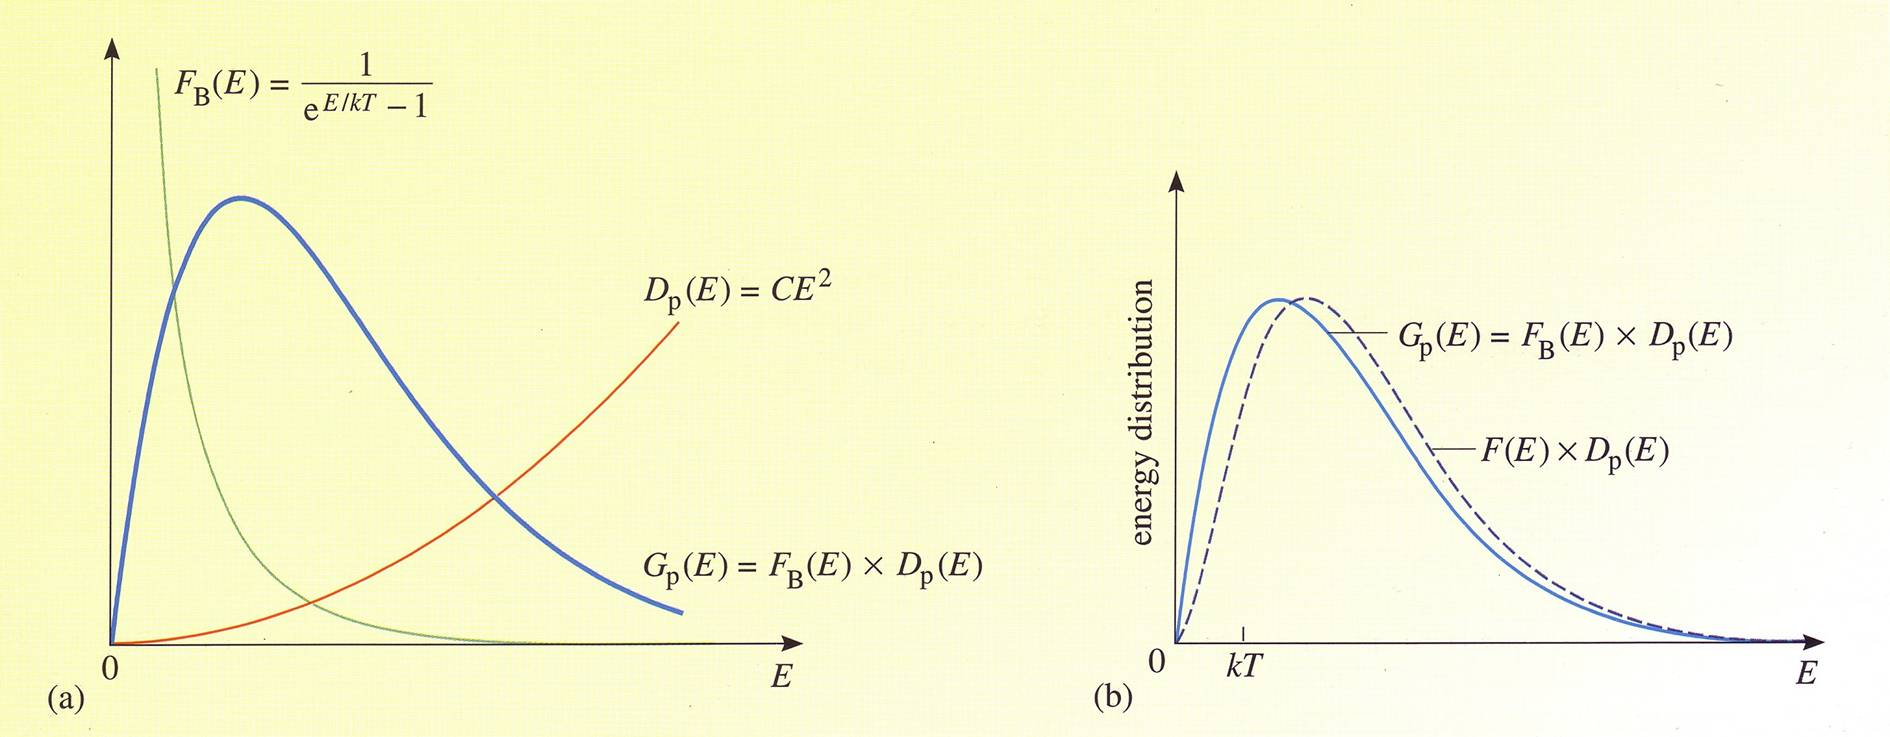 Bose-Einstein jakaumafunktio F BE = E/ kt e ( ) g E =